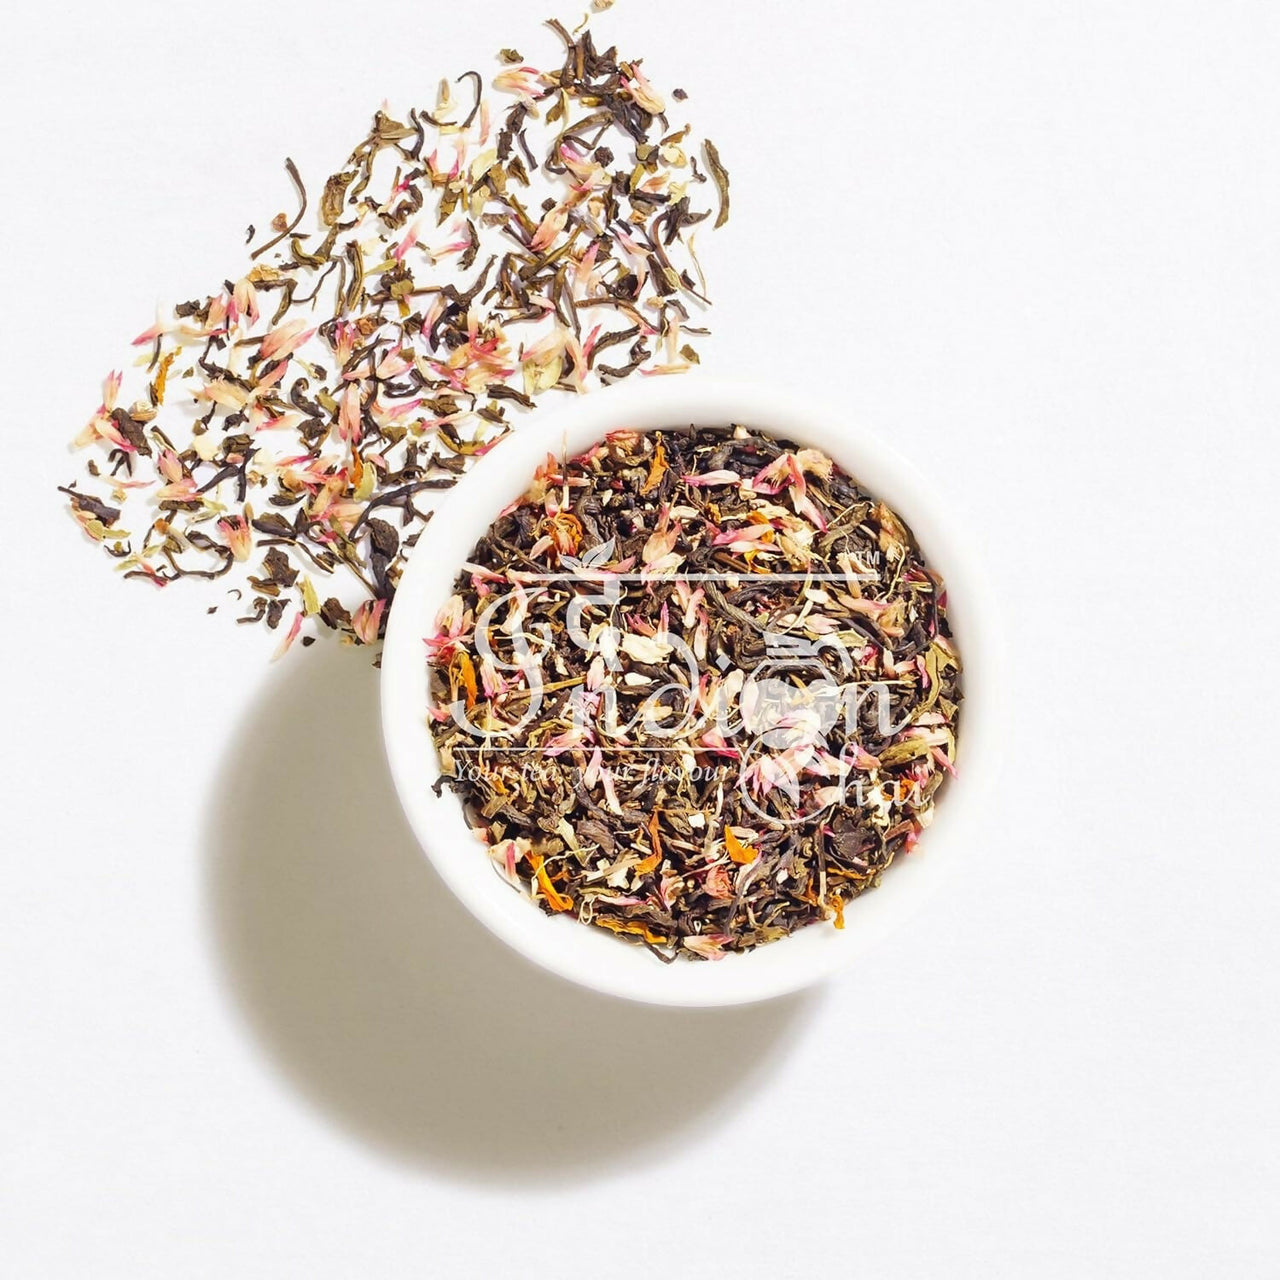 The Indian Chai – Pink Pepper Petal Tea - Distacart